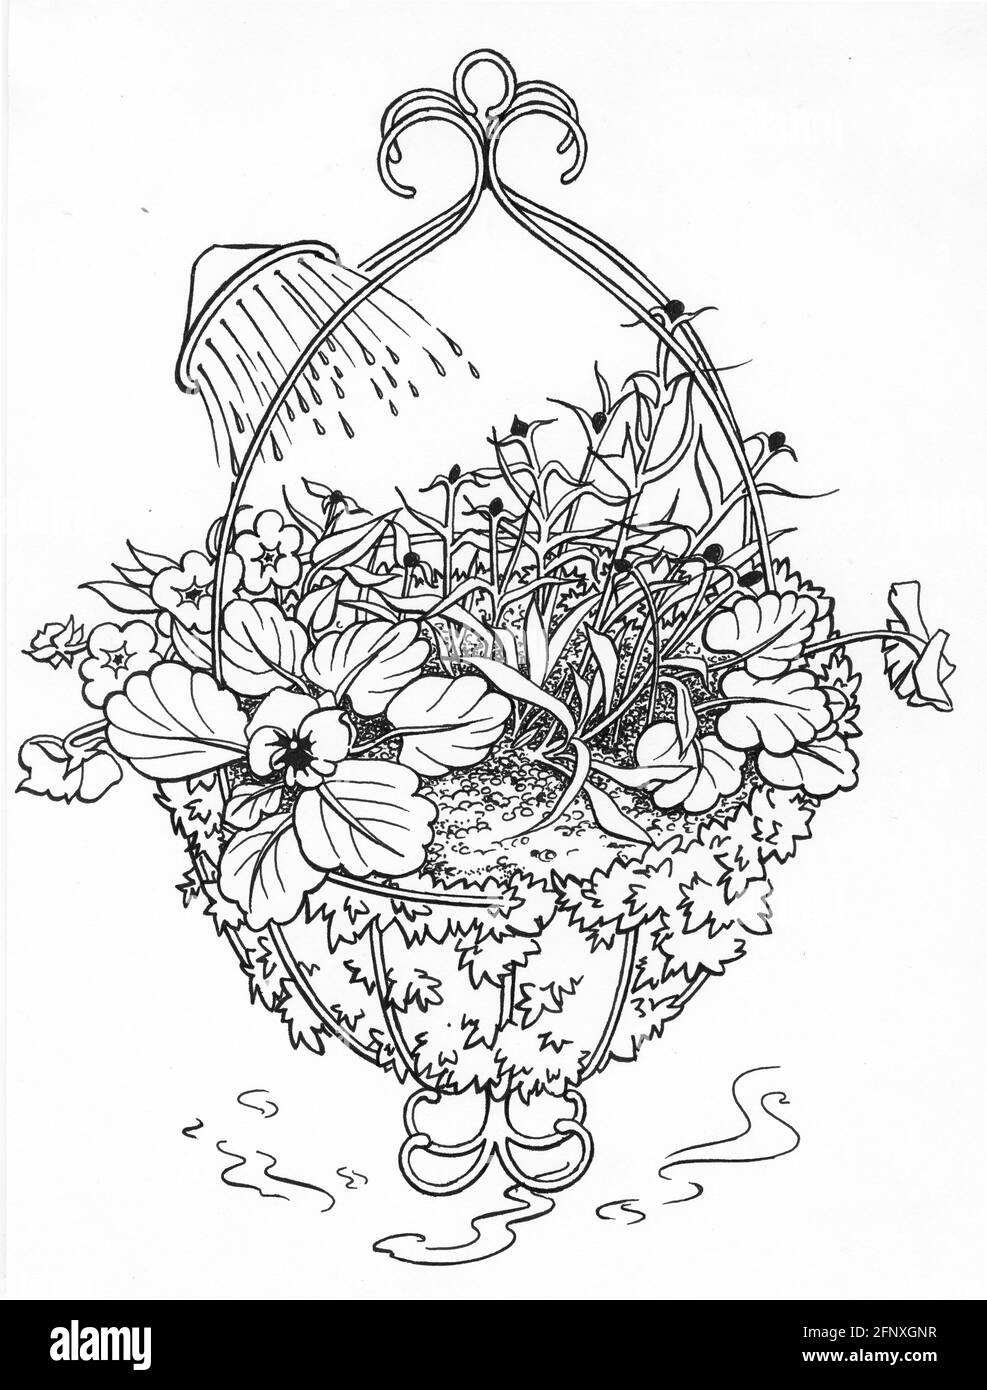 Dessin d'un panier suspendu complet avec un sphagnum doublure en mousse et plantes à fleurs Banque D'Images